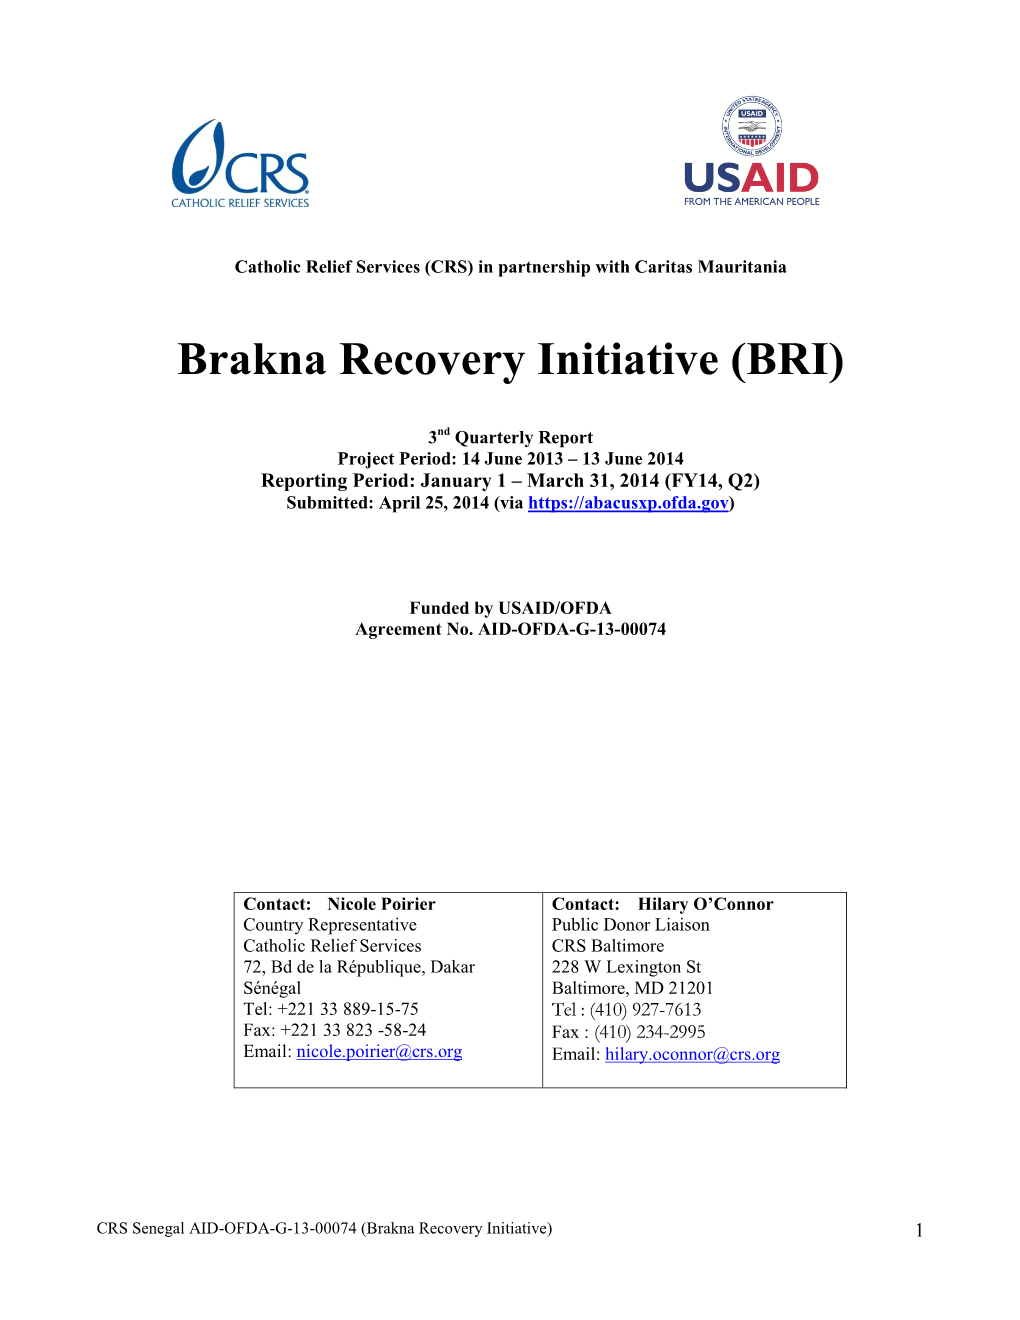 Brakna Recovery Initiative (BRI)